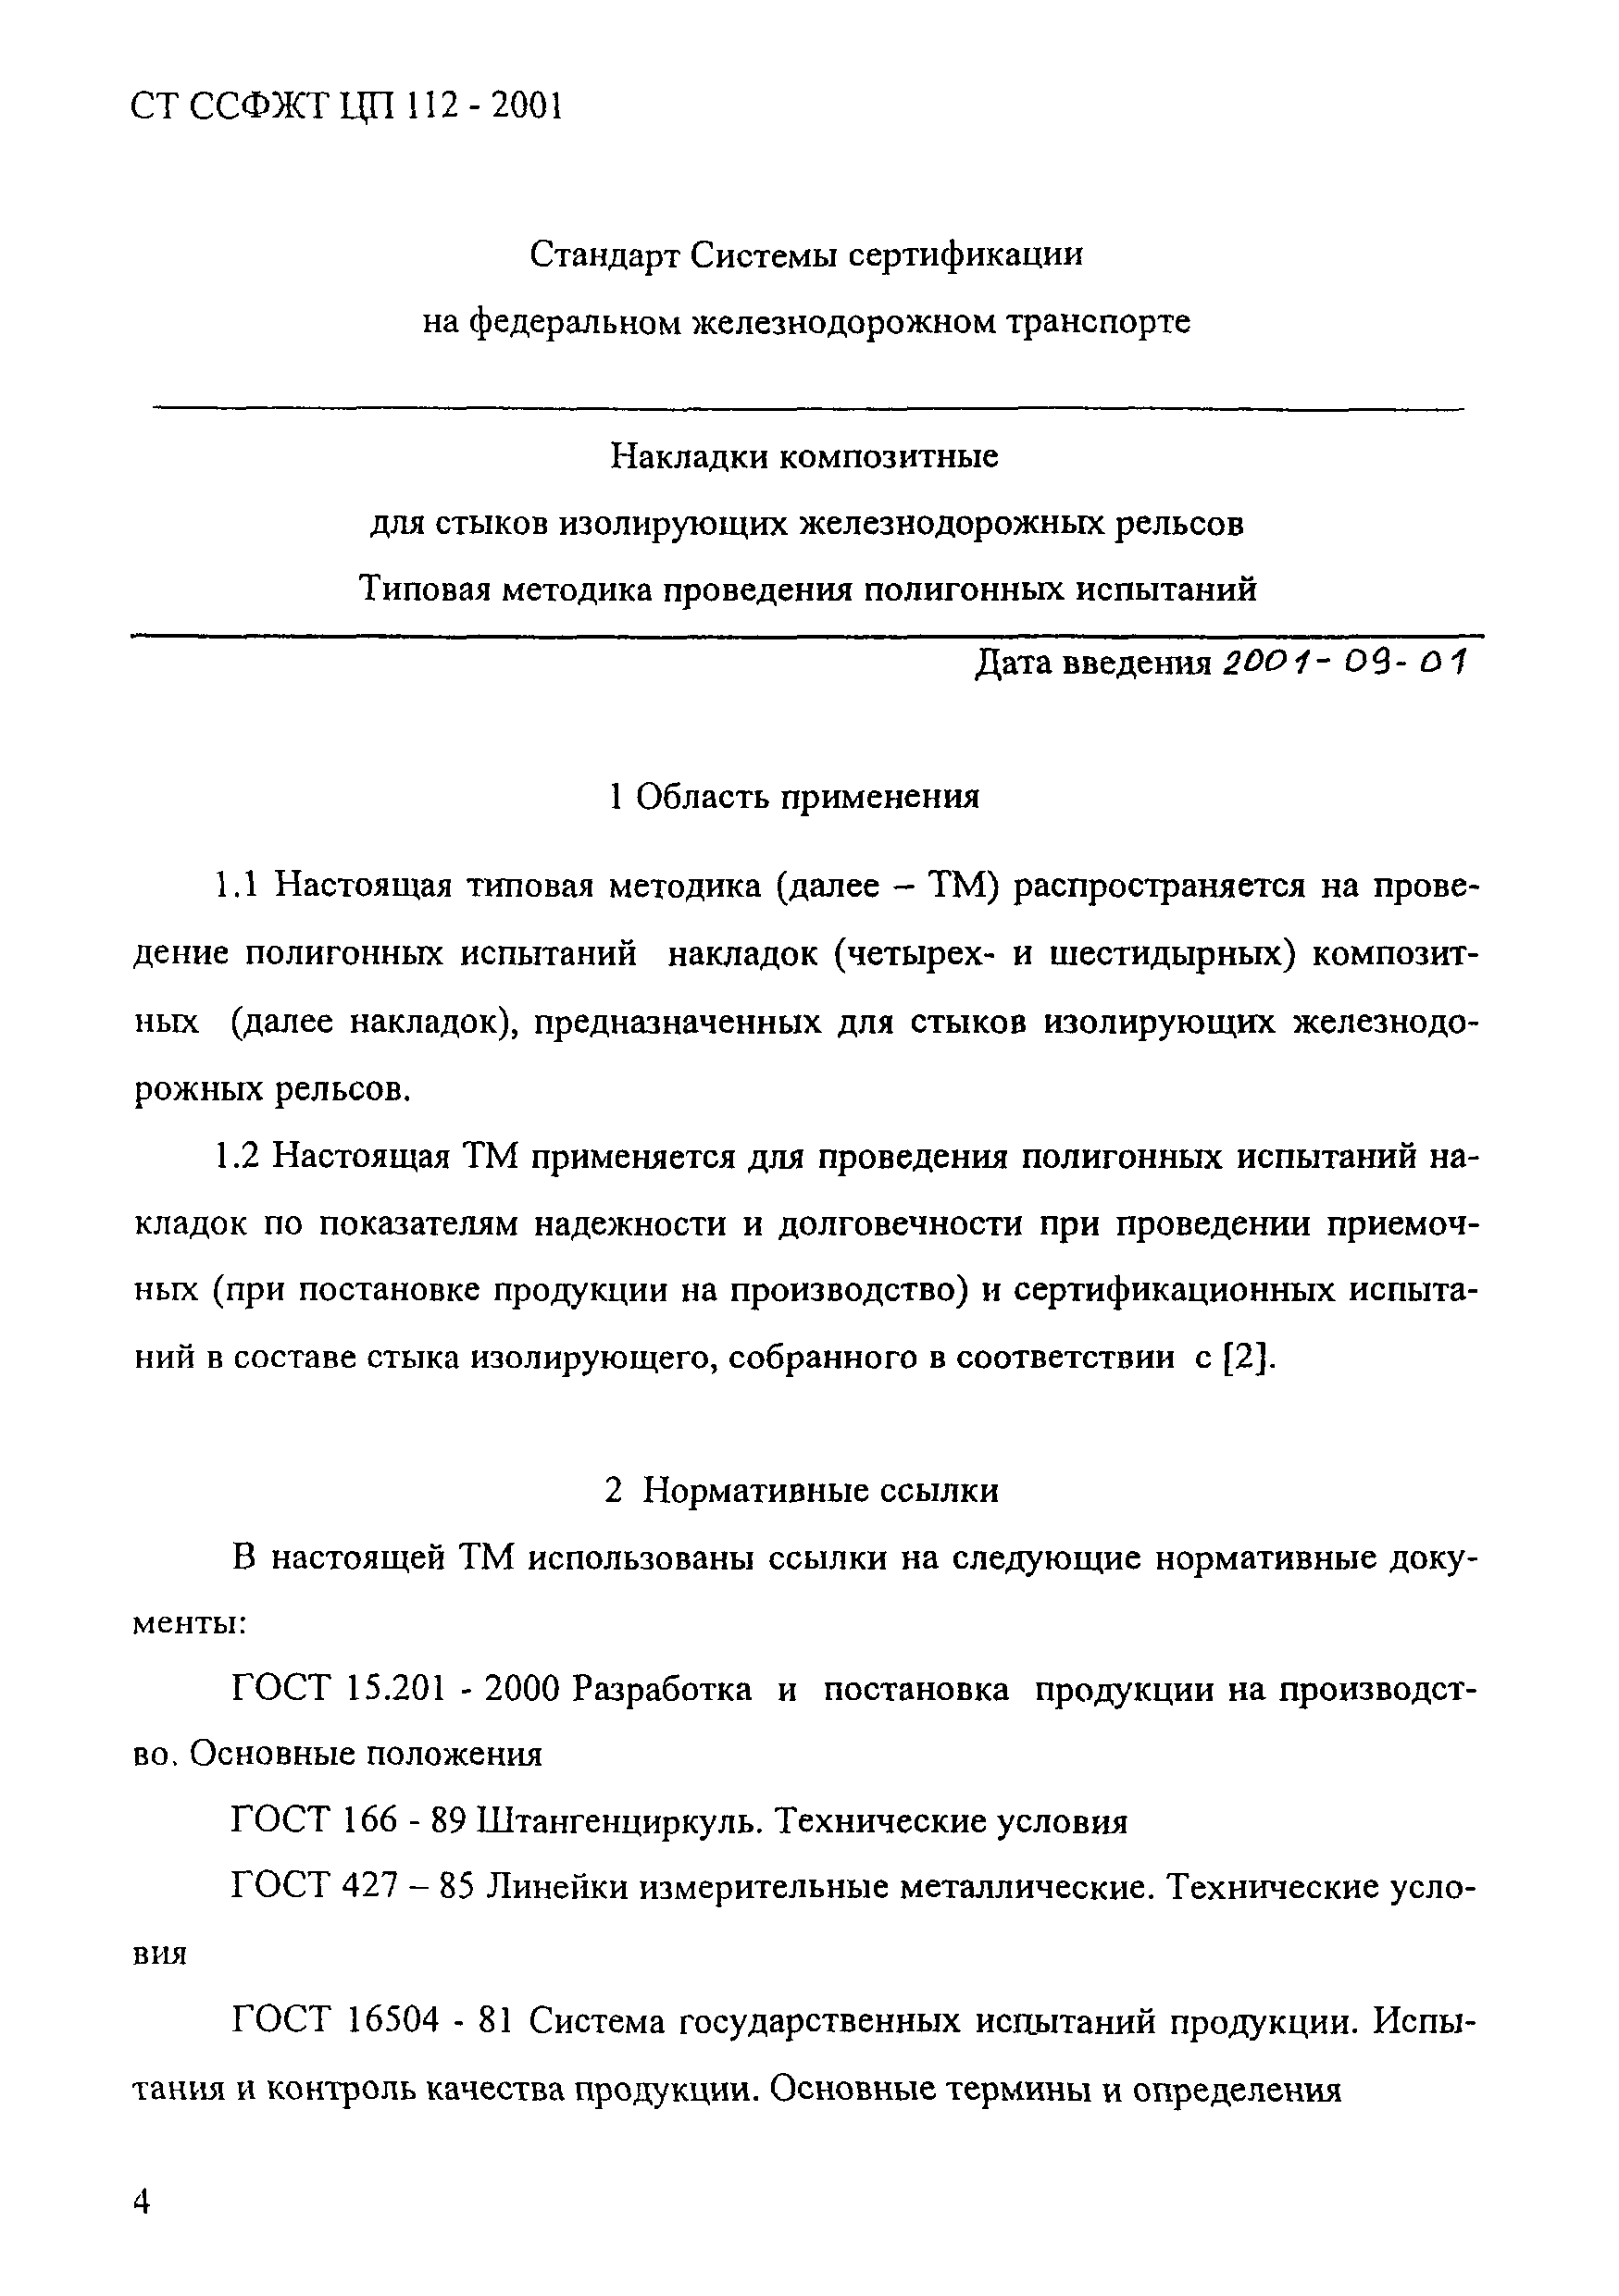 СТ ССФЖТ ЦП 112-2001